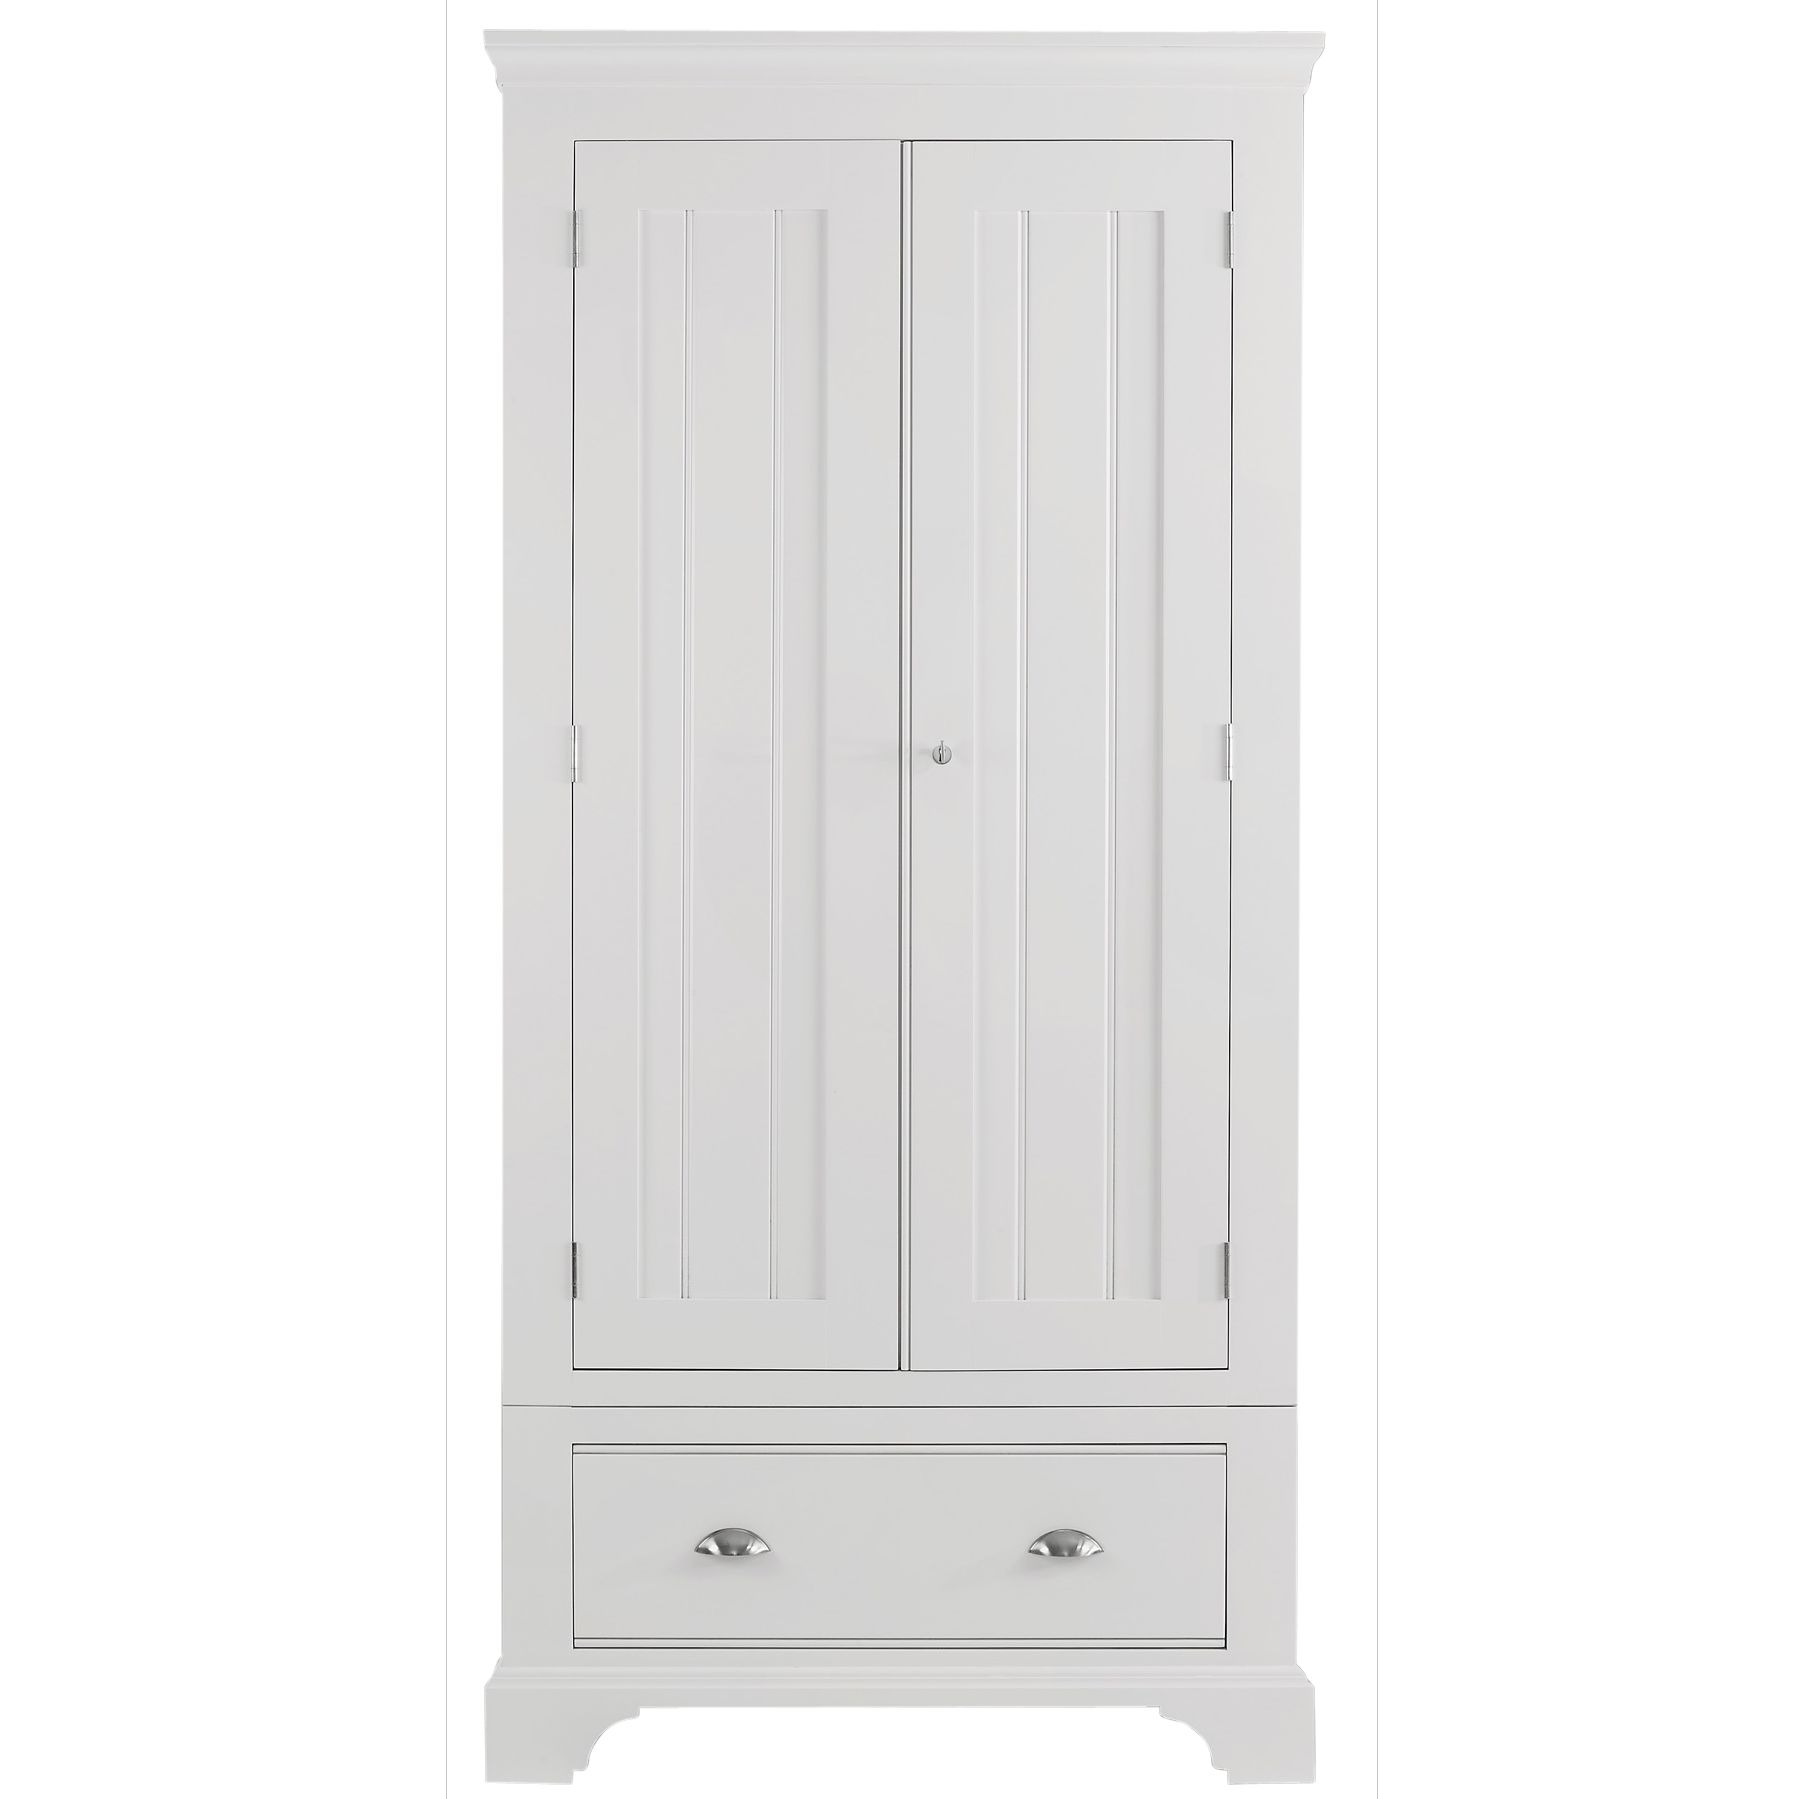 John Lewis Hampton 2 Door 1 Drawer Wardrobe, White